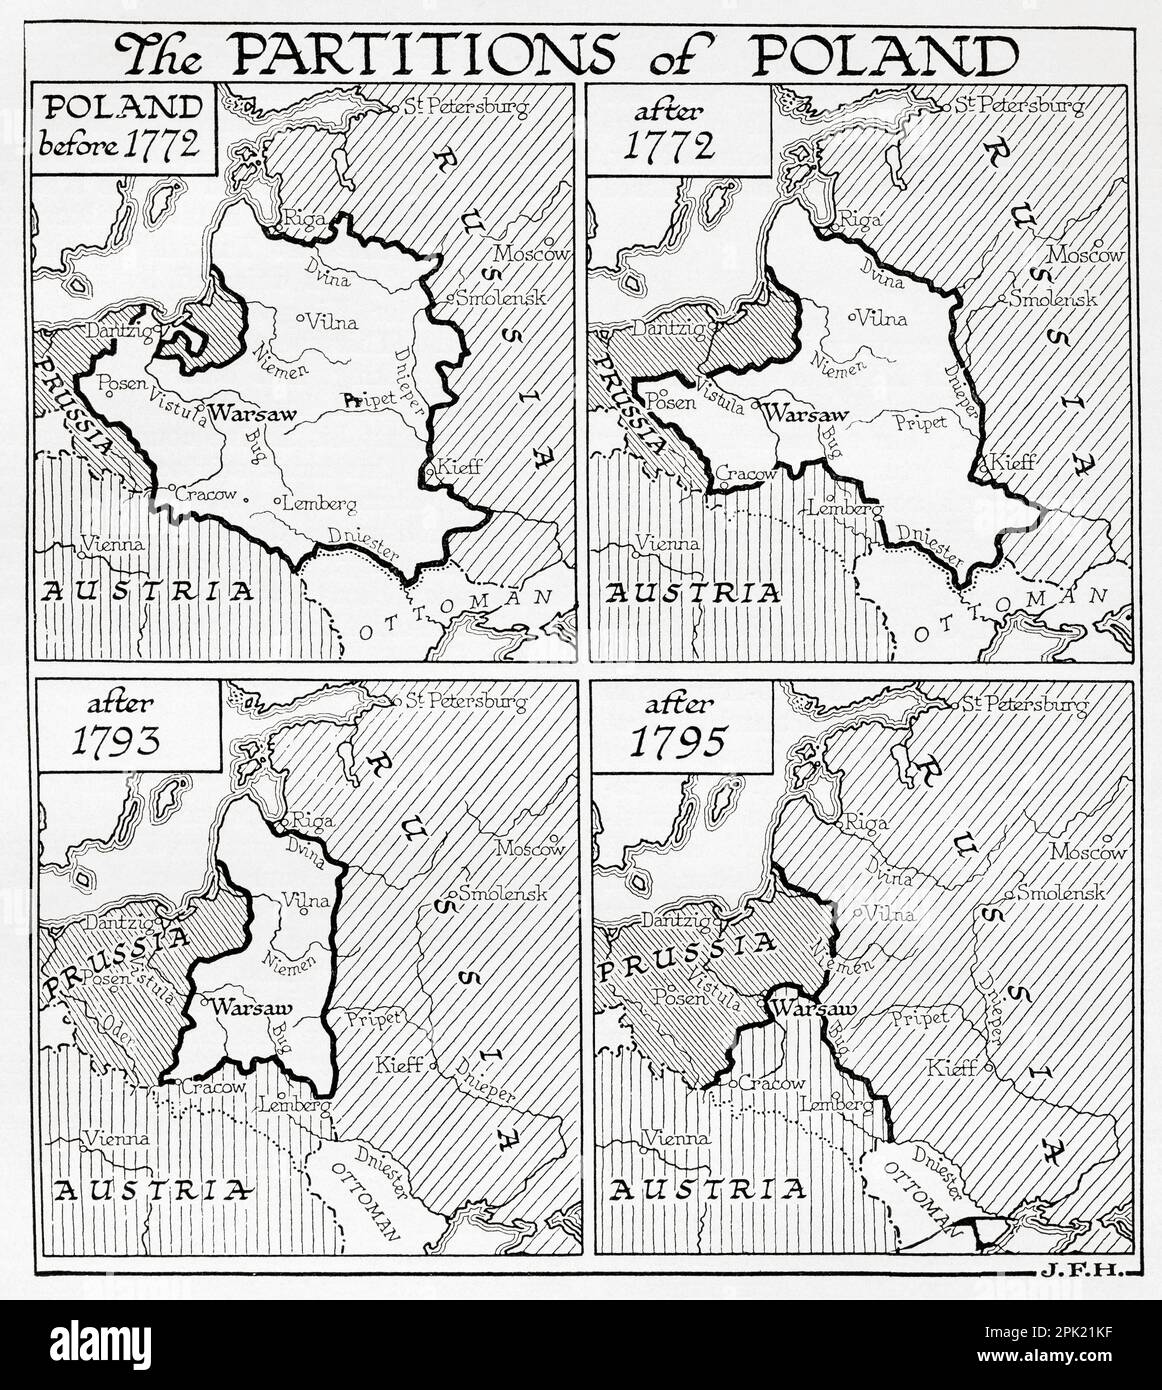 Mappa che mostra le partizioni della Polonia, dall'alto a sinistra, Polonia prima del 1772, dopo il 1772, dopo il 1793 e dopo il 1795. Si trattava di tre divisioni del Commonwealth polacco-lituano che hanno posto fine all'esistenza dello stato, con l'eliminazione della Polonia e della Lituania sovrane per 123 anni e sono state condotte dalla monarchia asburgica, dal Regno di Prussia e dall'Impero russo. Dal libro Outline of History di H.G. Wells, pubblicato nel 1920. Foto Stock